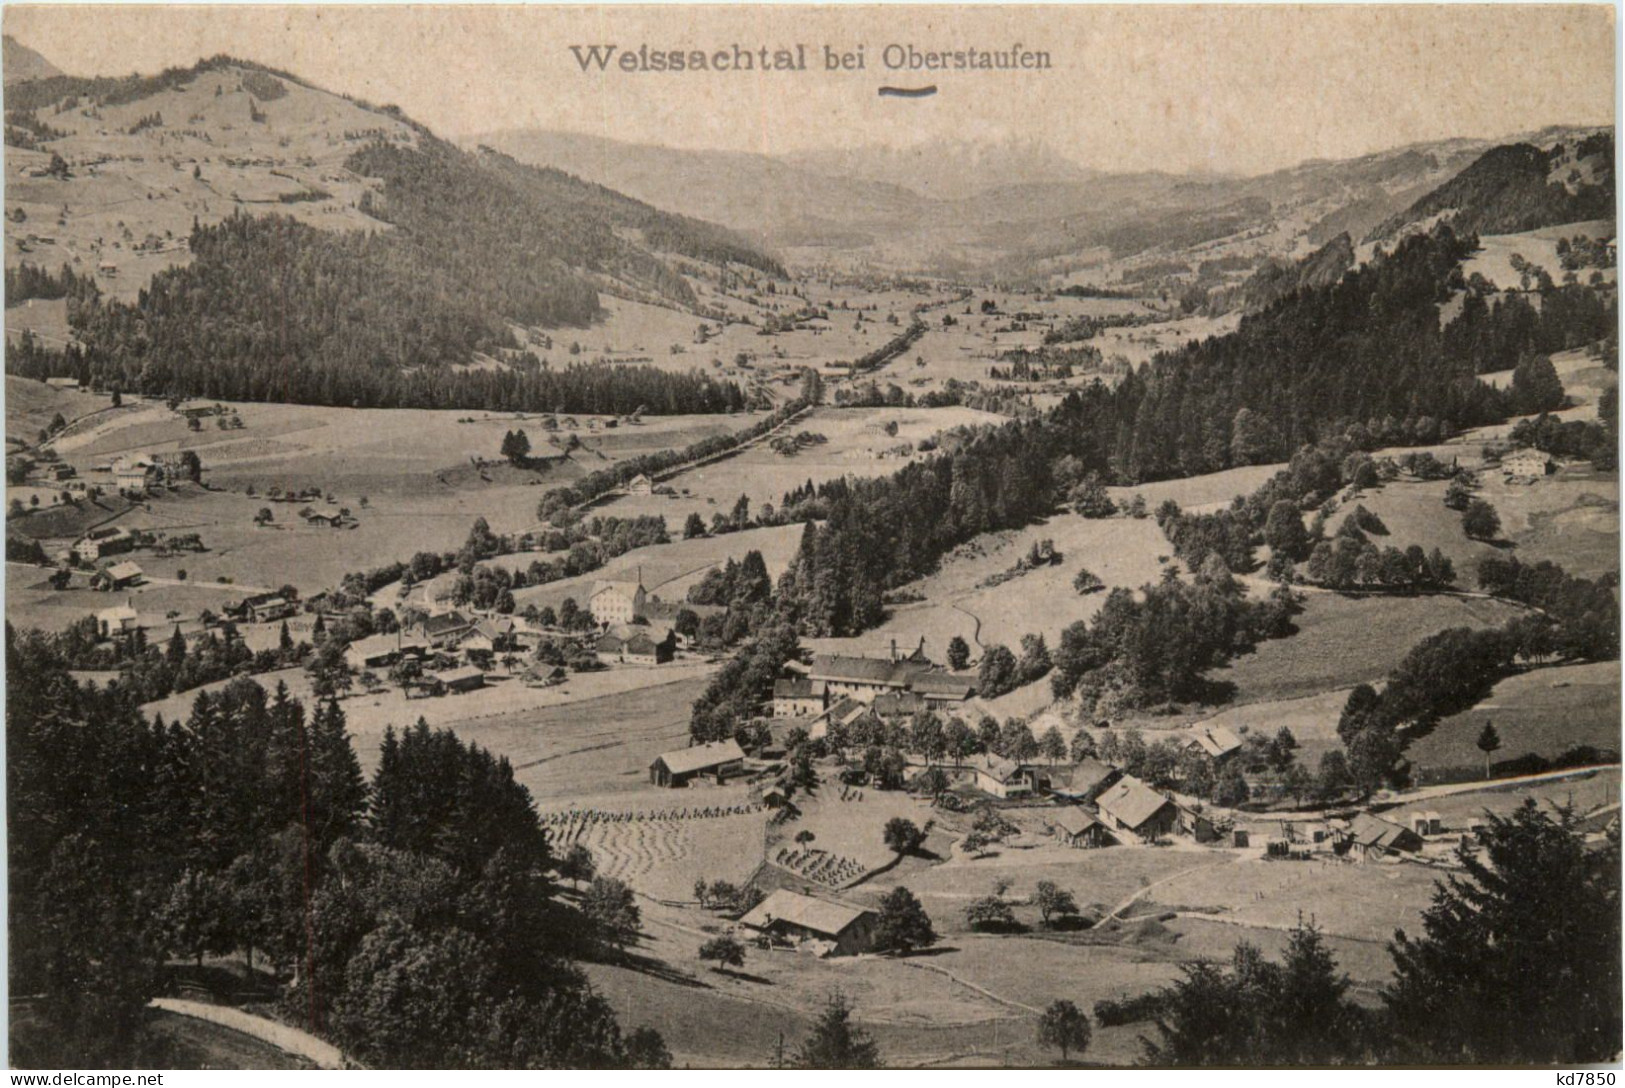 Oberstaufen, Allgäu, Weissachtal - Oberstaufen